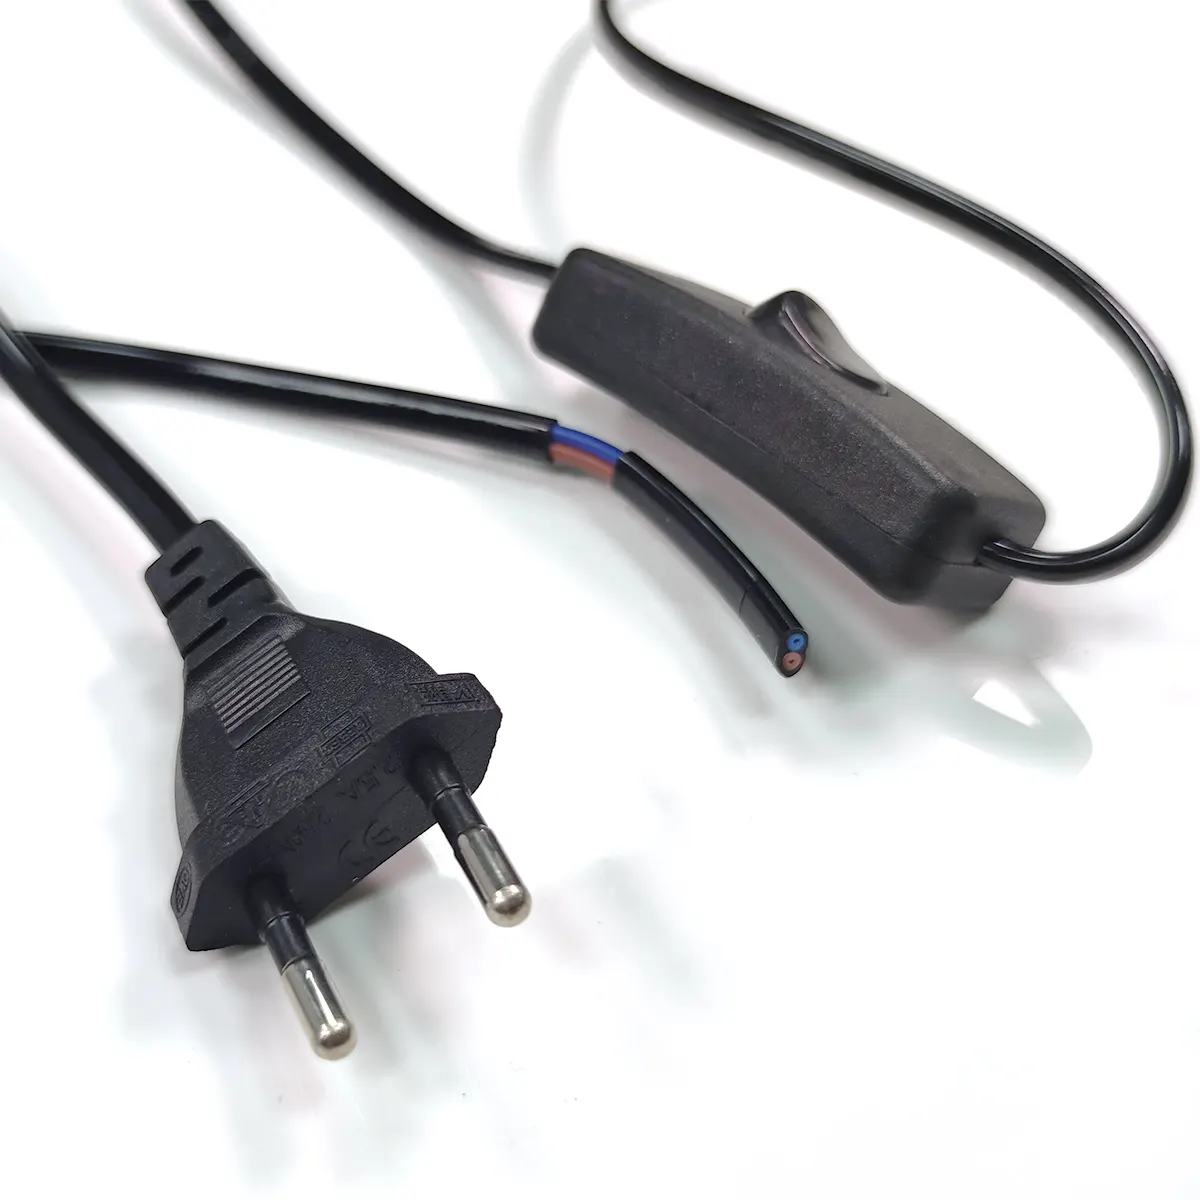 2.5A Европейский ЕС 2 Pin E14 или E27 Электрический кабель переменного тока, соляная лампа, шнур питания с переключателем и держателем